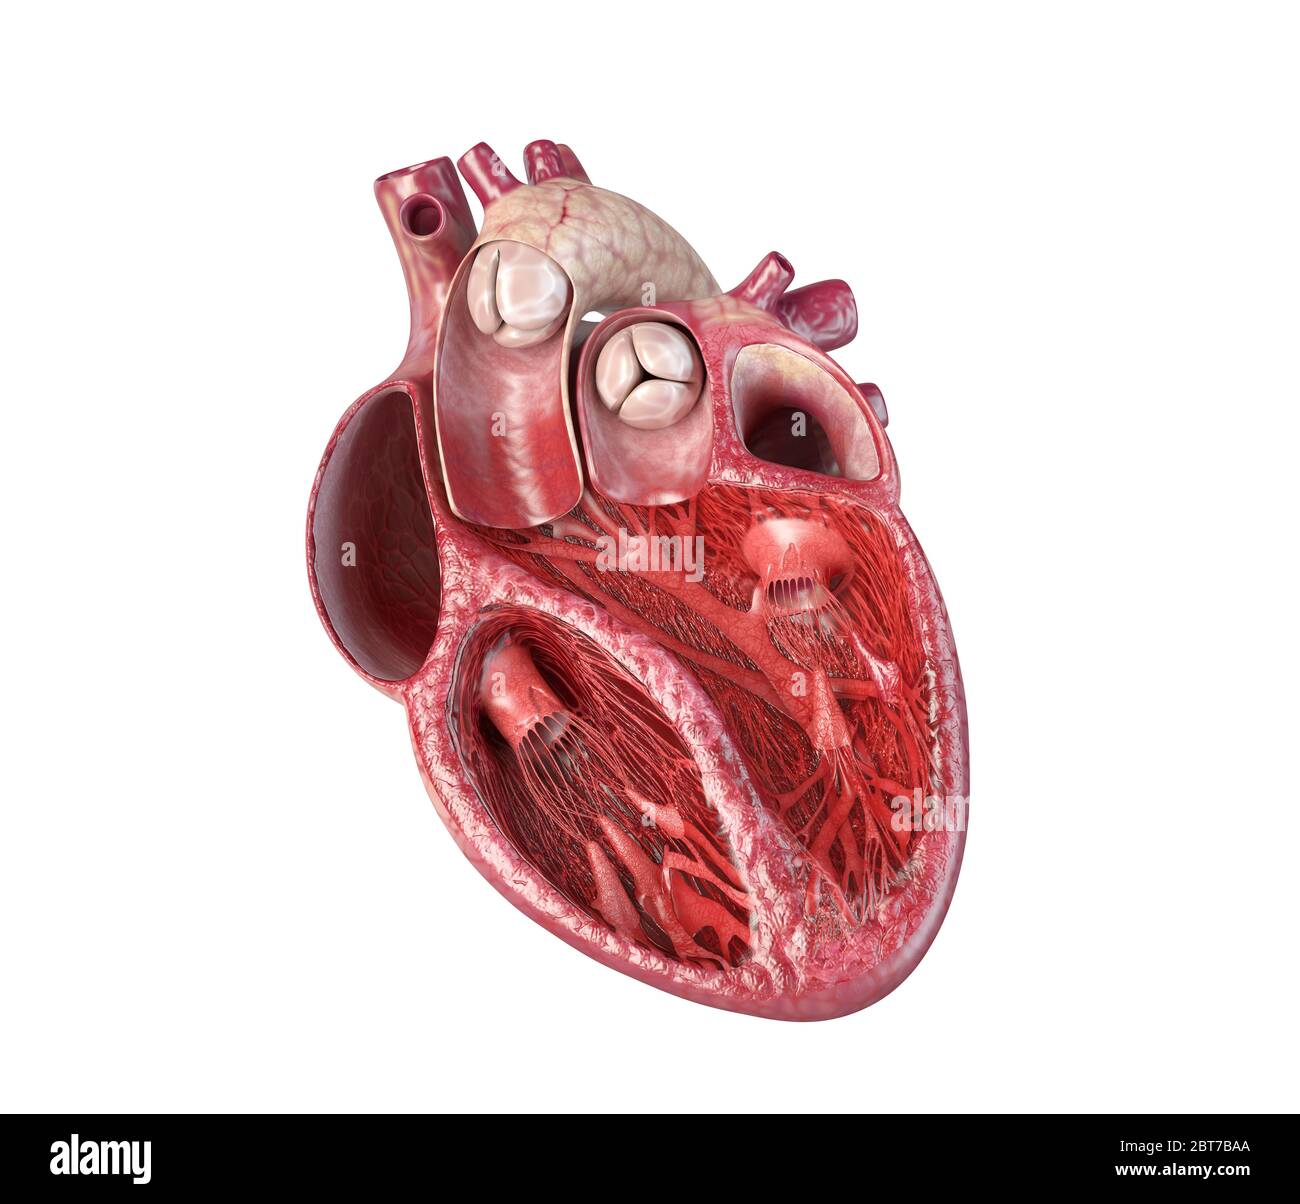 Coupe transversale du cœur humain, avec structure interne détaillée. Gros plan sur fond blanc. Banque D'Images